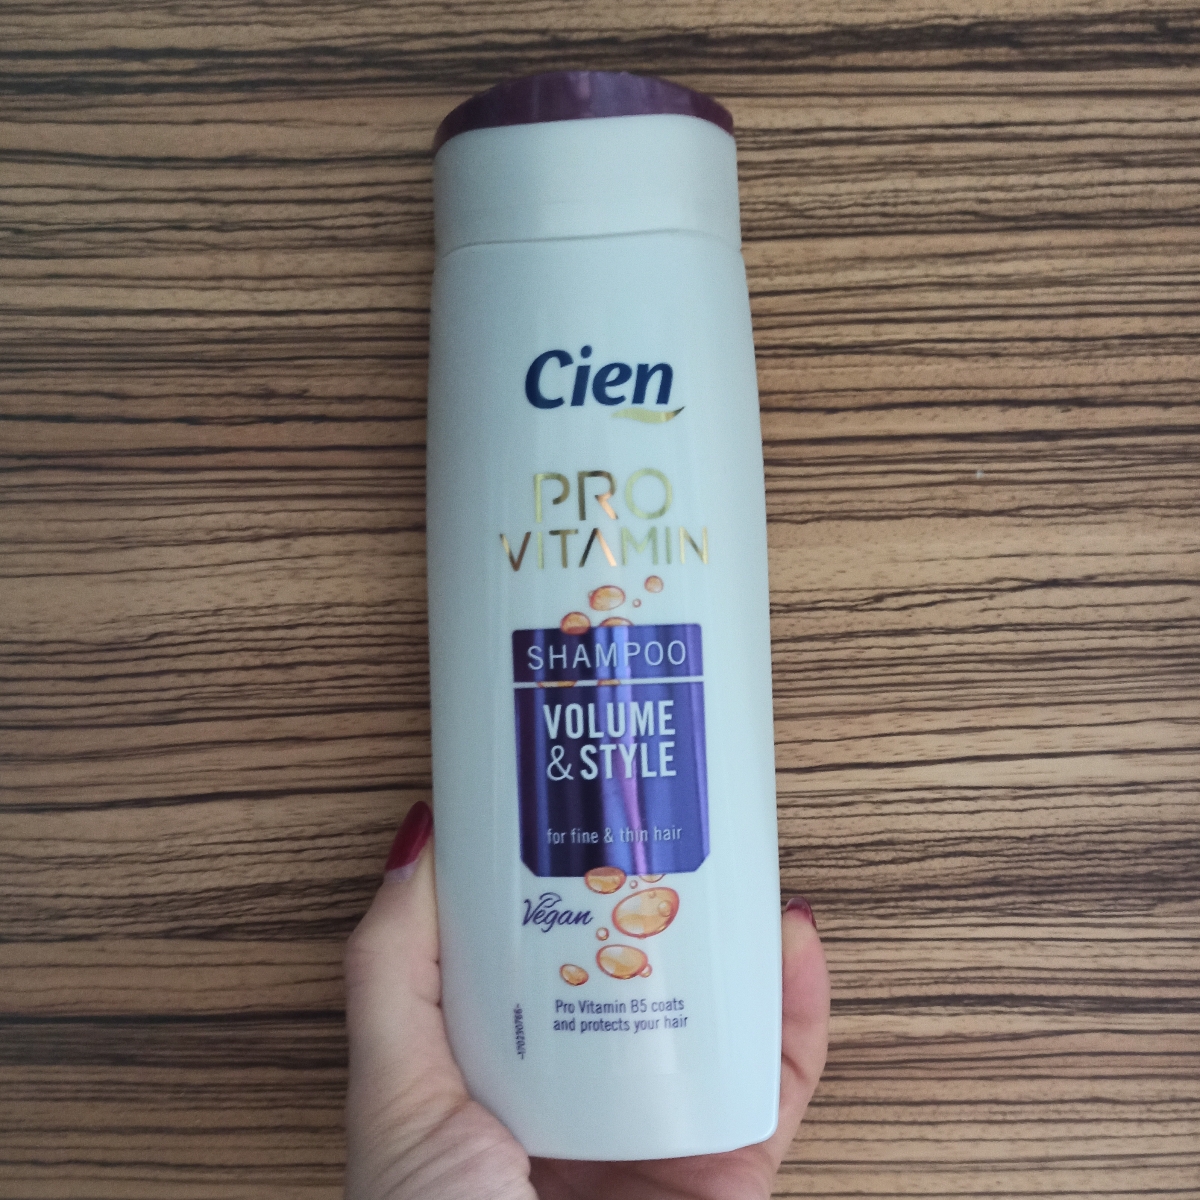 Recensioni su Pro Vitamin Shampoo Volume & Style di Cien | abillion